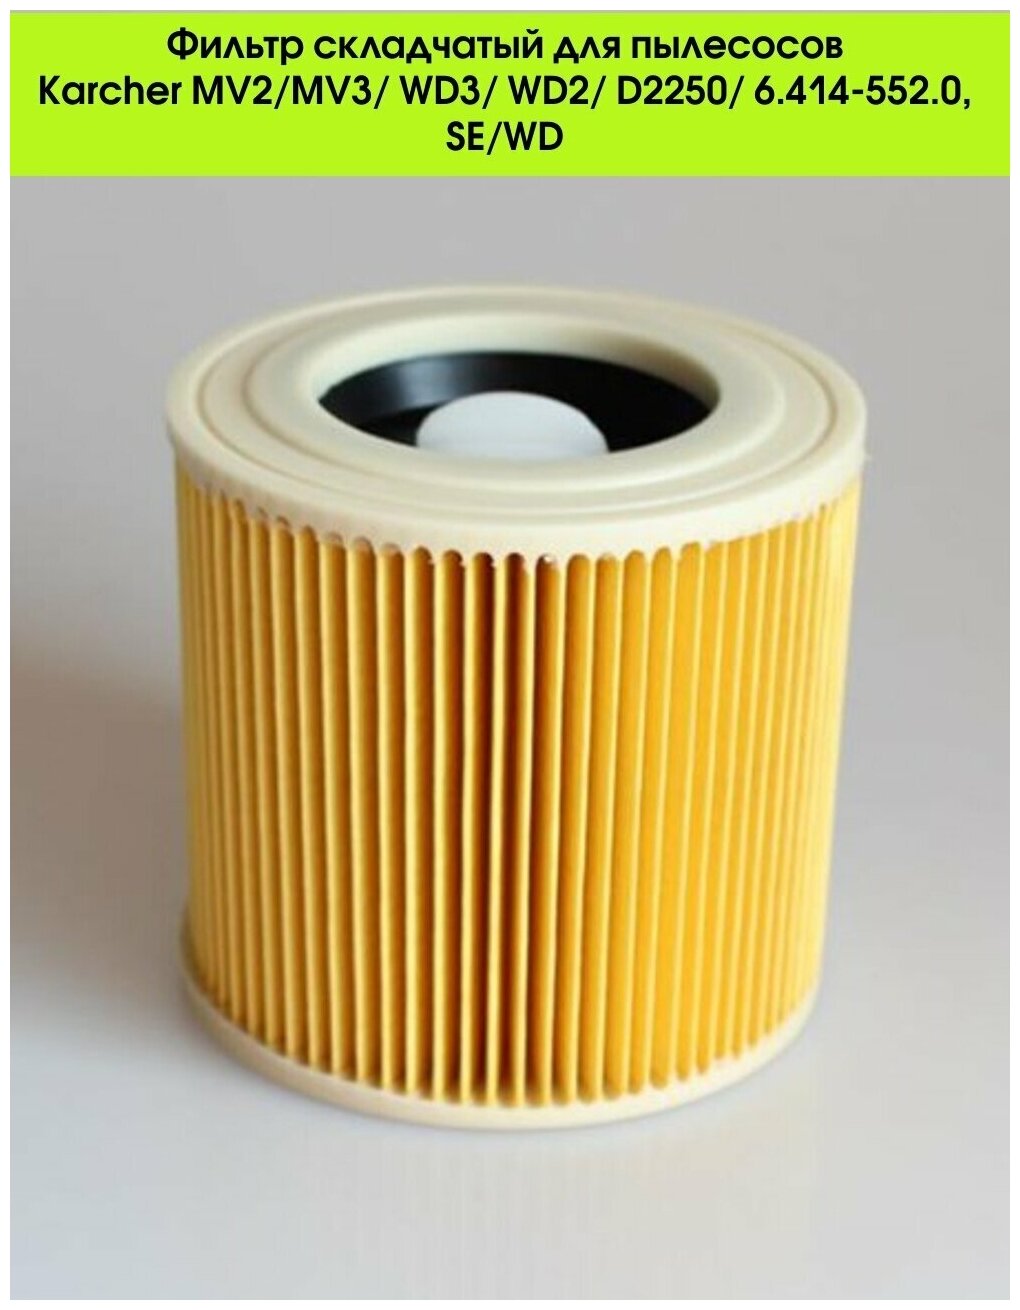 Фильтр для пылесосов Karcher WD3, WD2, D2250, MV2, MV3, 6.414-552.0 для SE, WD